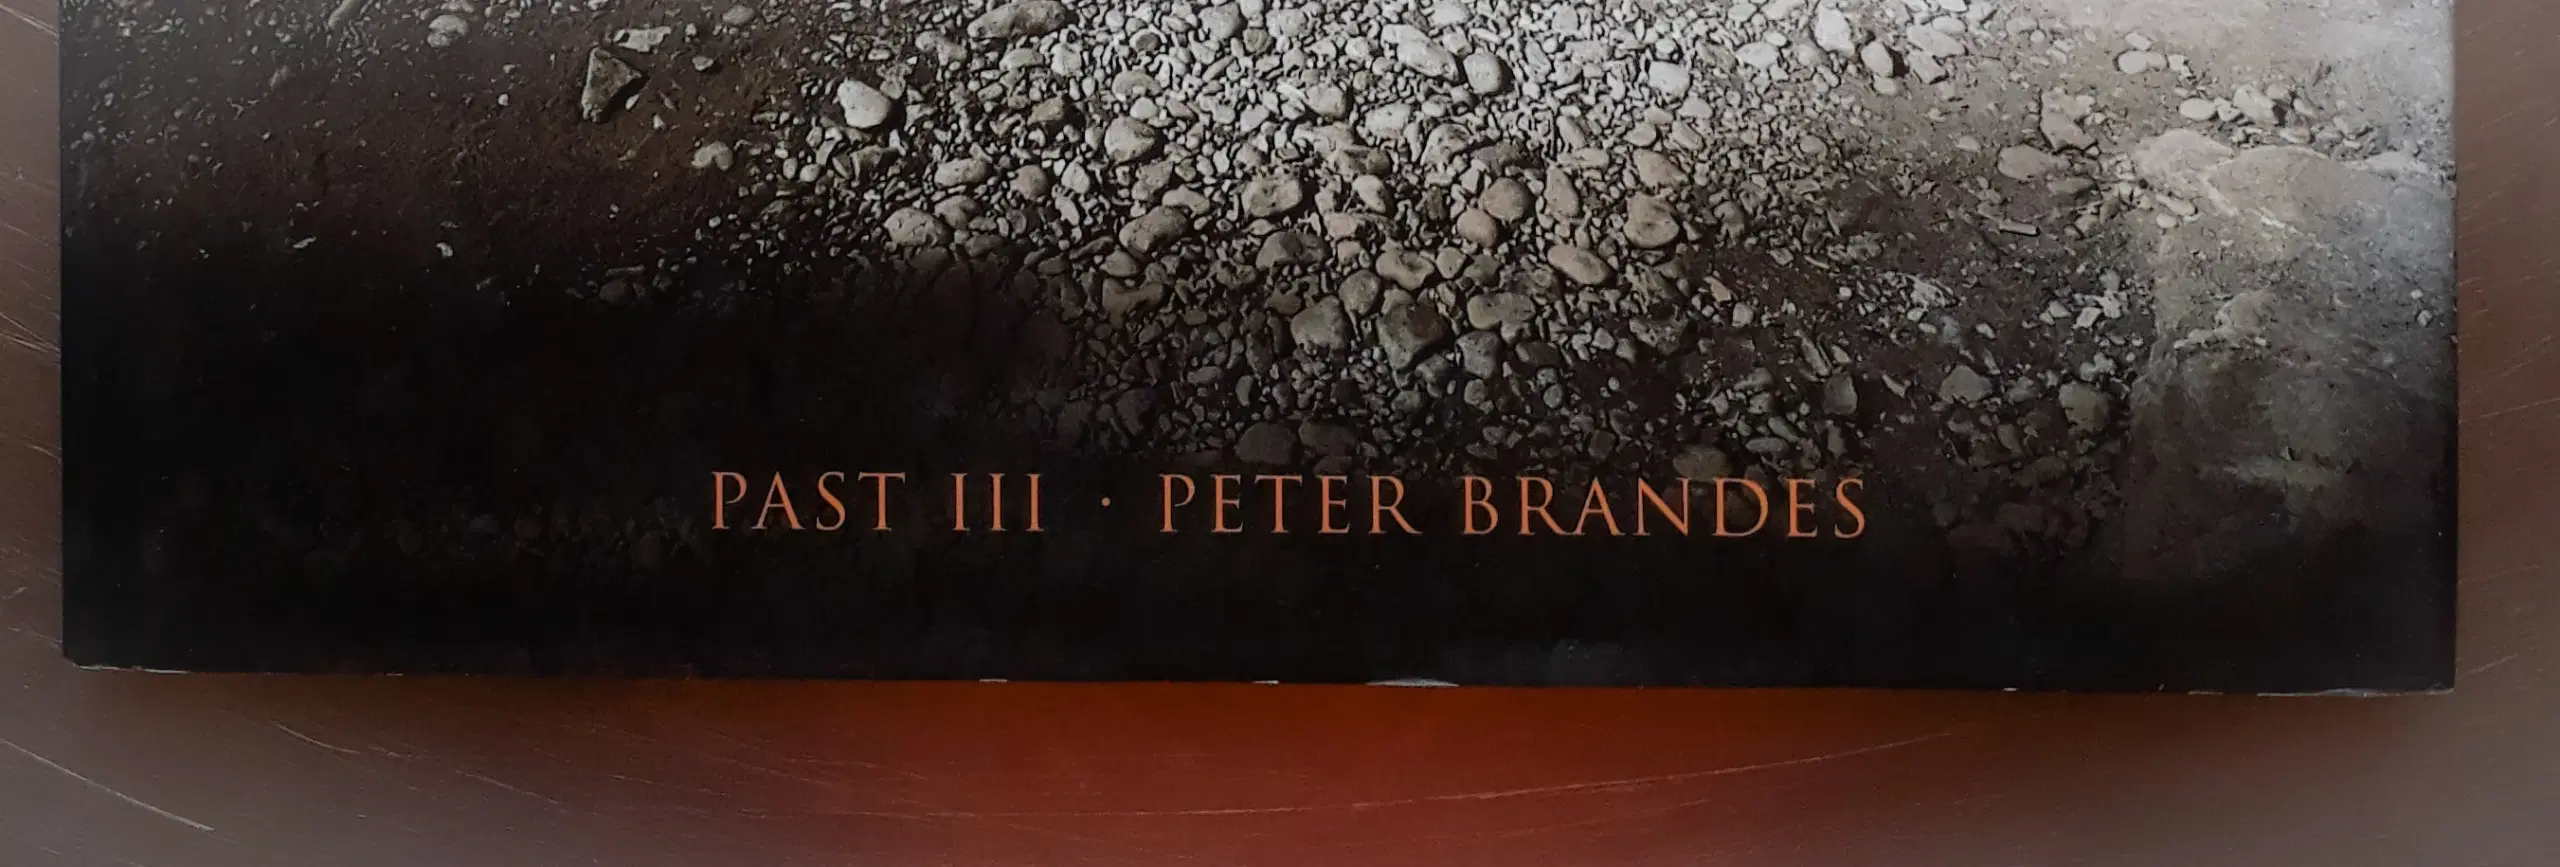 Peter Brandes - Past III